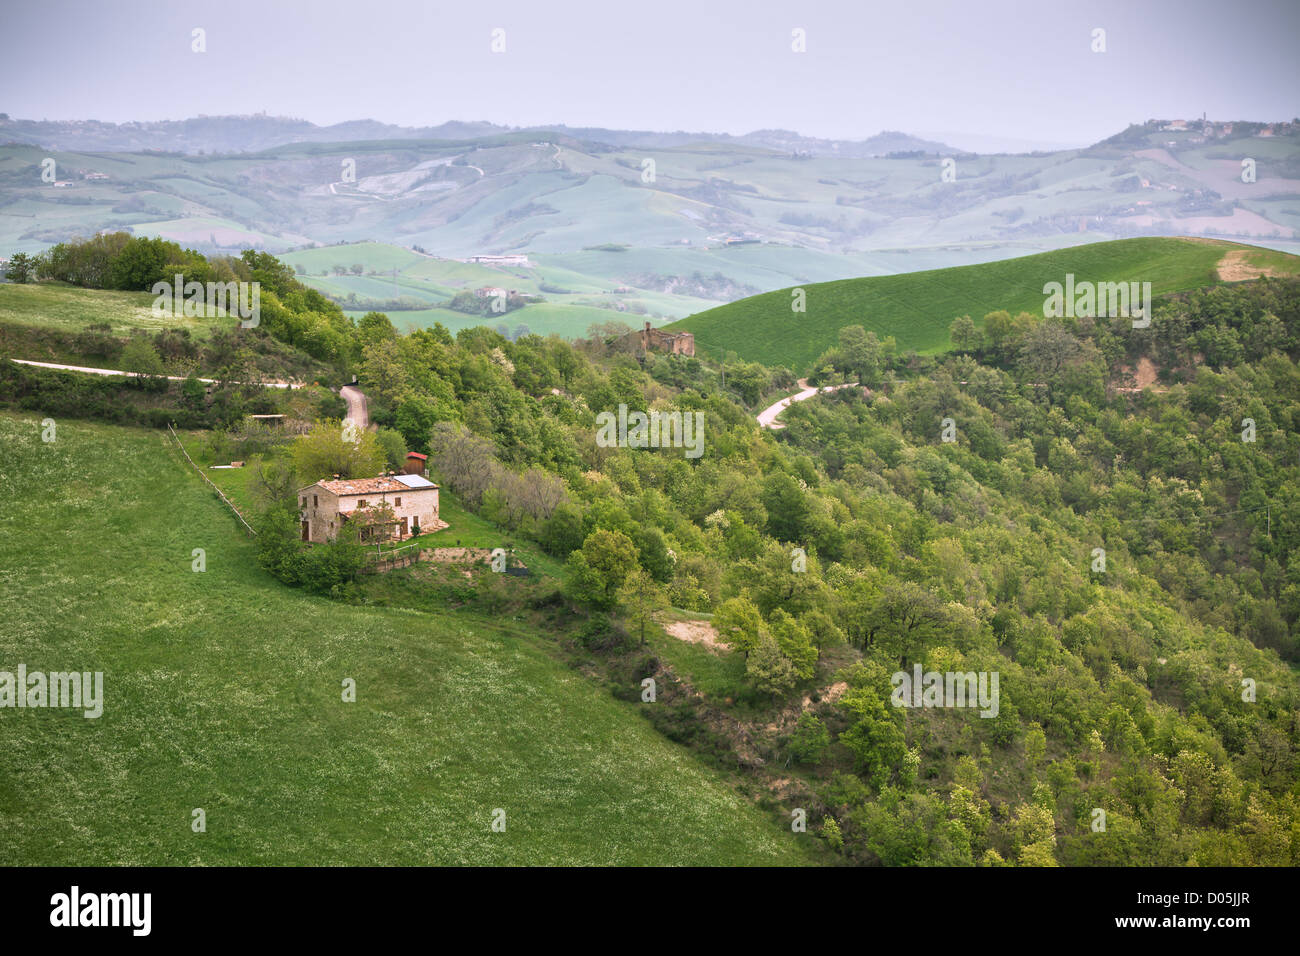 Schlechtes Wetter in Italien Ackerland. Grüne Hügel und Bauernhaus Stockfoto